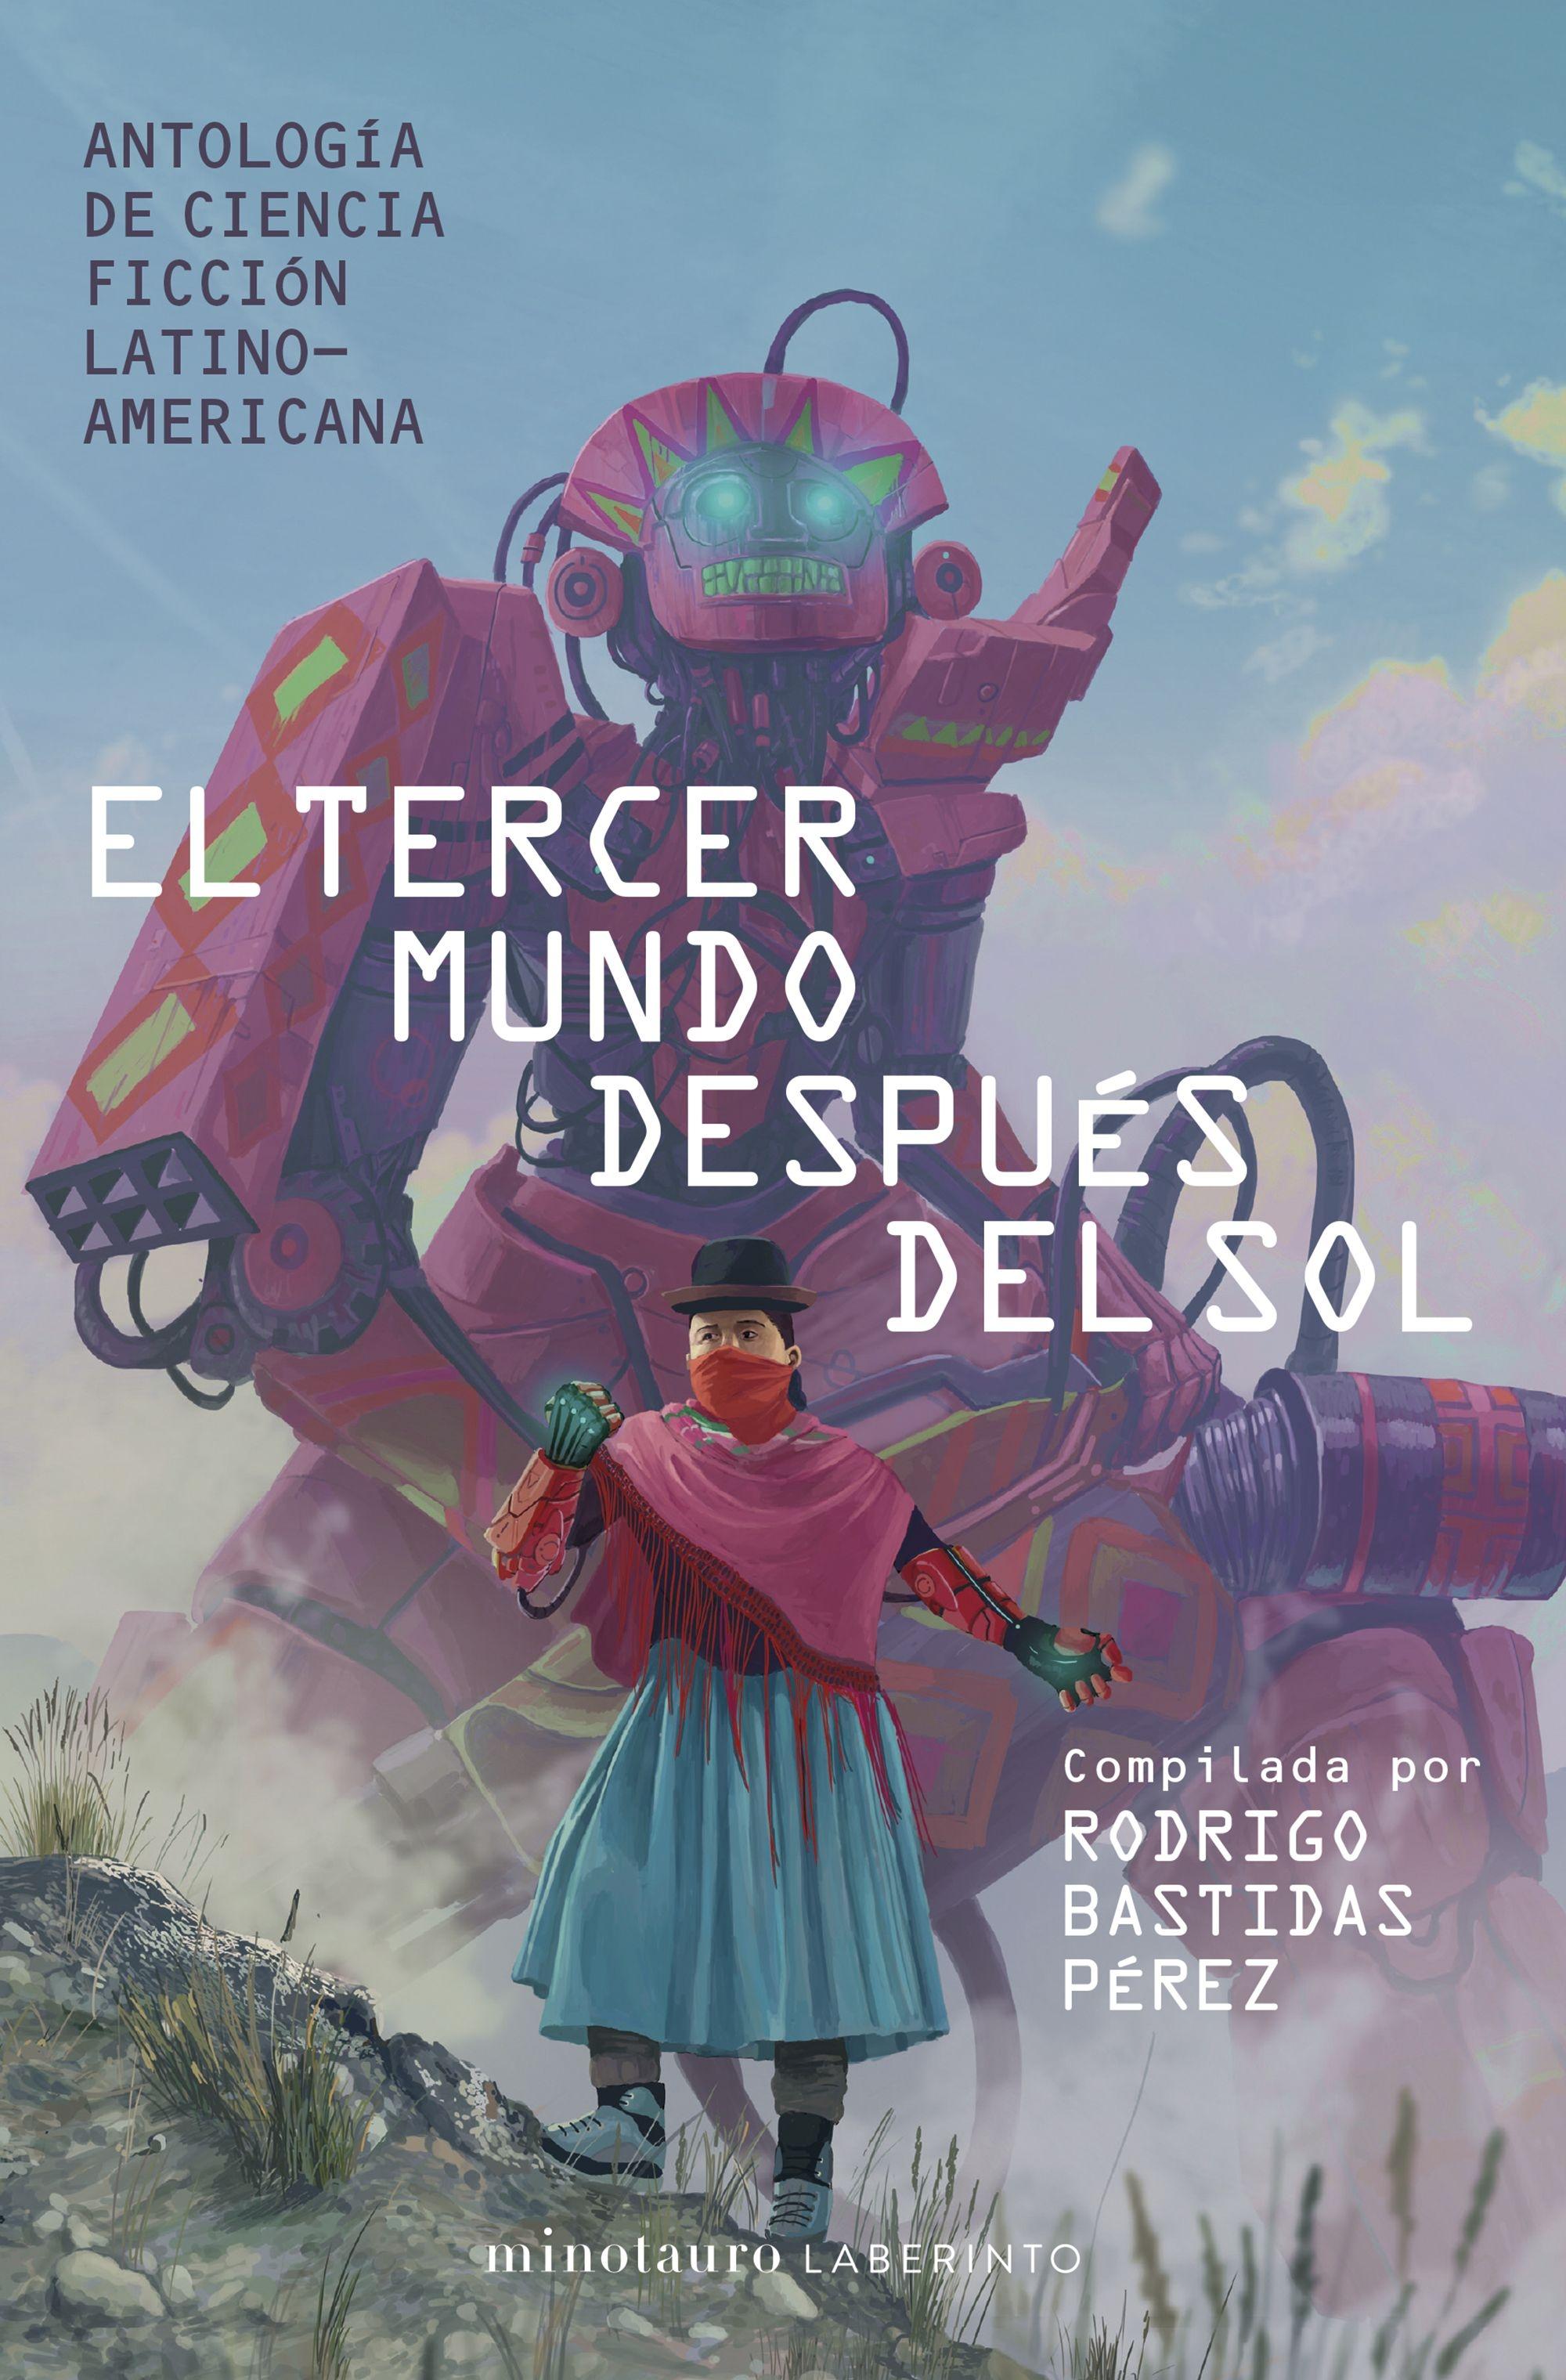 Tercer mundo después del sol, El "Antología de Ciencia Ficción Latinoamericana. Compilada por Rodrigo Bast"